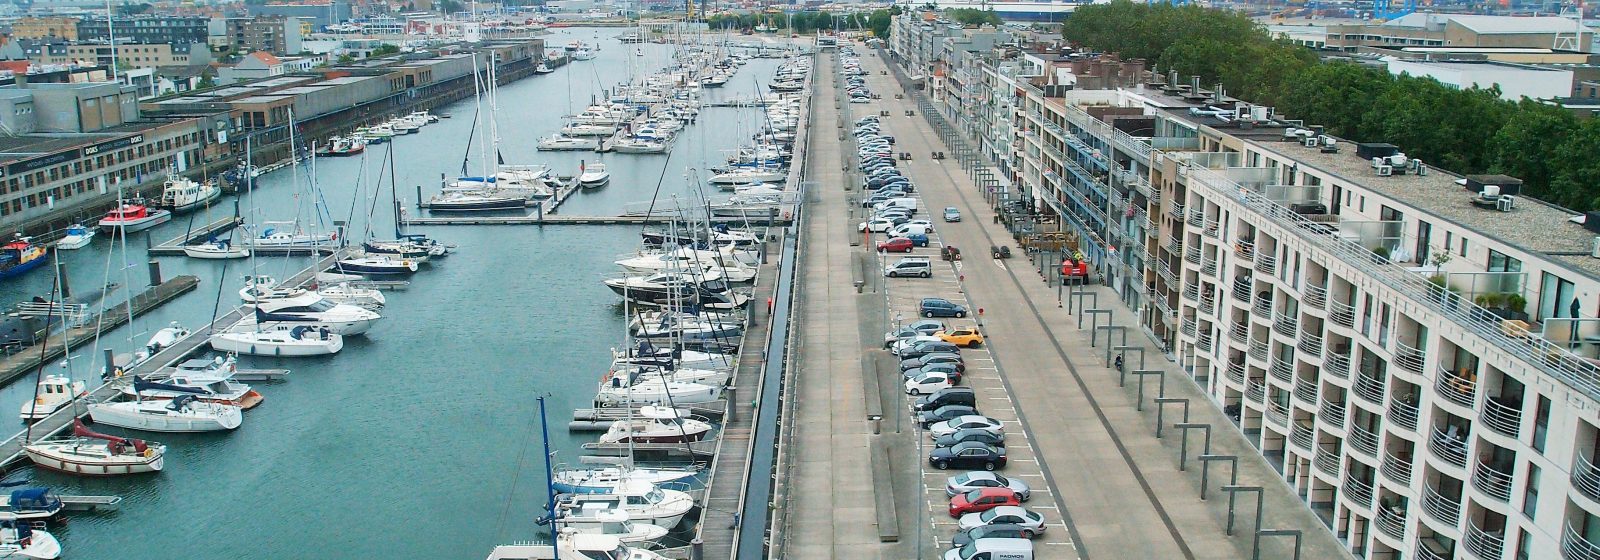 De oude vissershaven van Zeebrugge